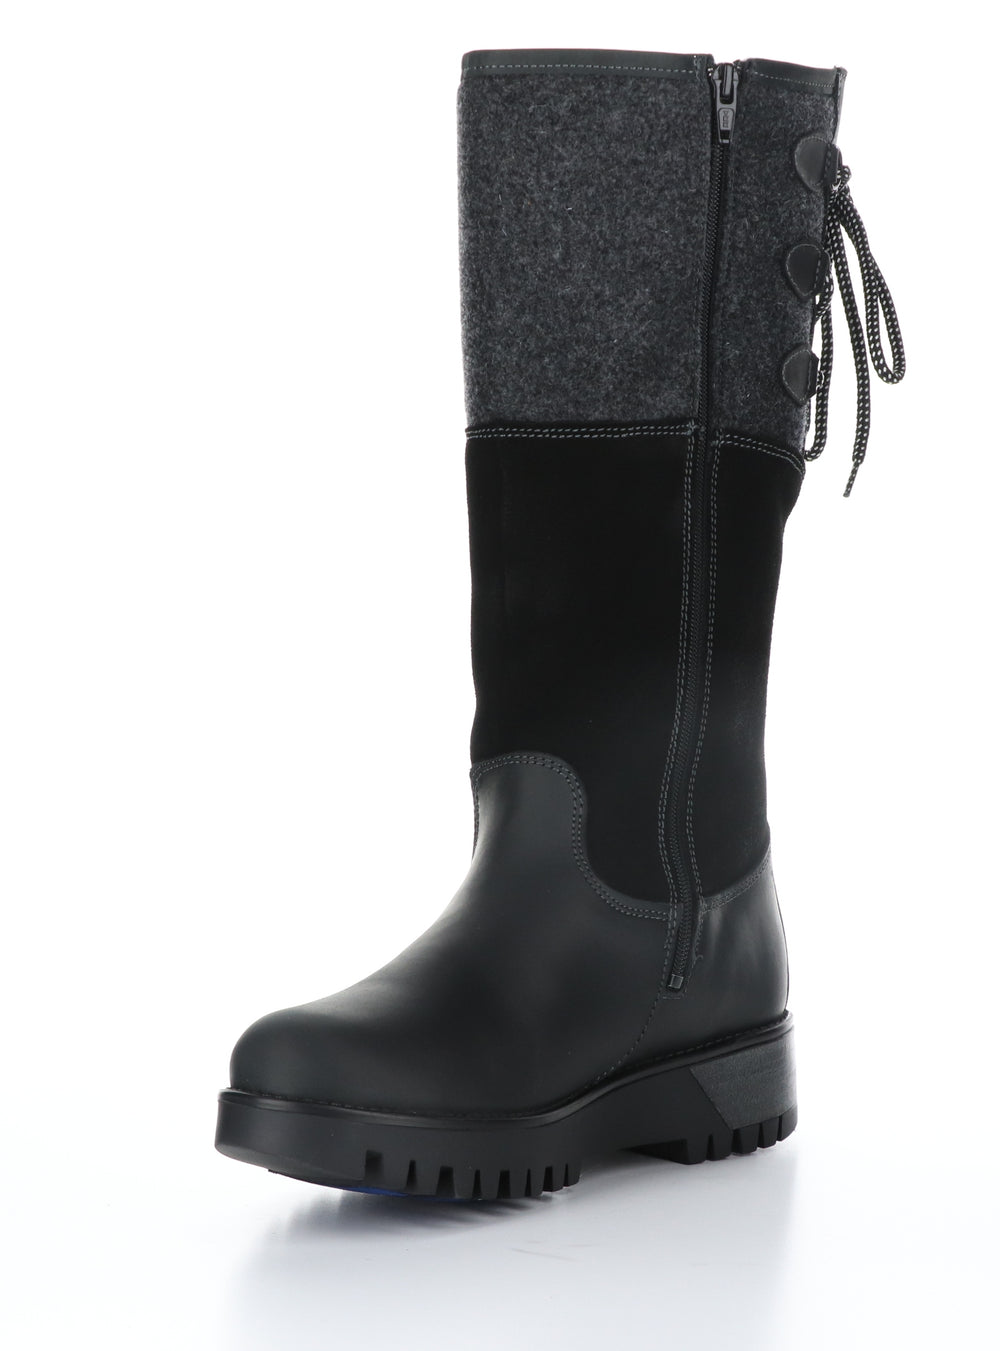 GOOSE PRIMA Black/Black Zip Up Boots|GOOSE PRIMA Bottes avec Fermeture Zippée in Noir